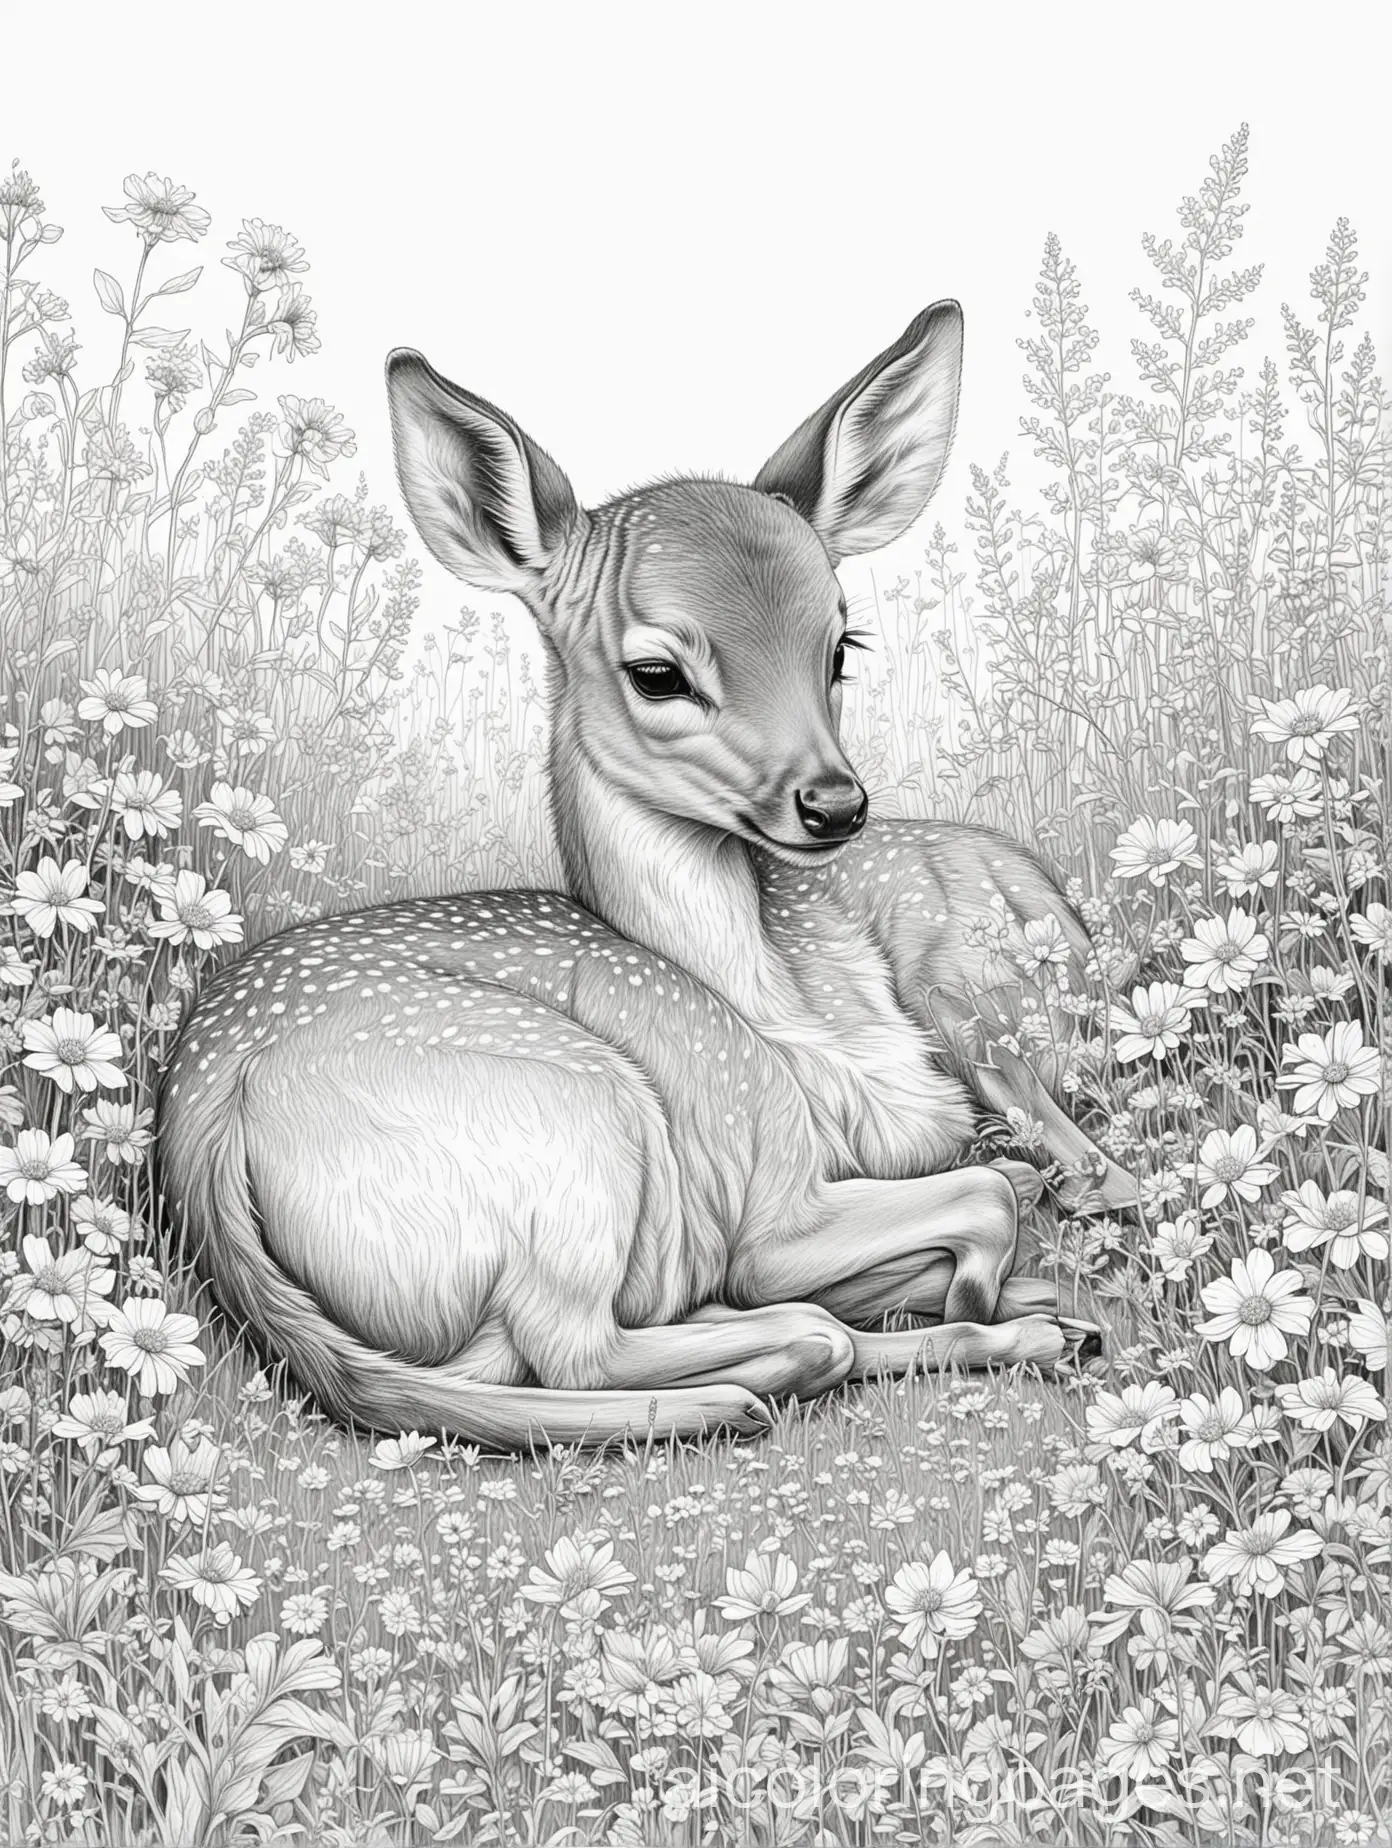 Sleeping-Baby-Deer-Amid-Wildflowers-Coloring-Page